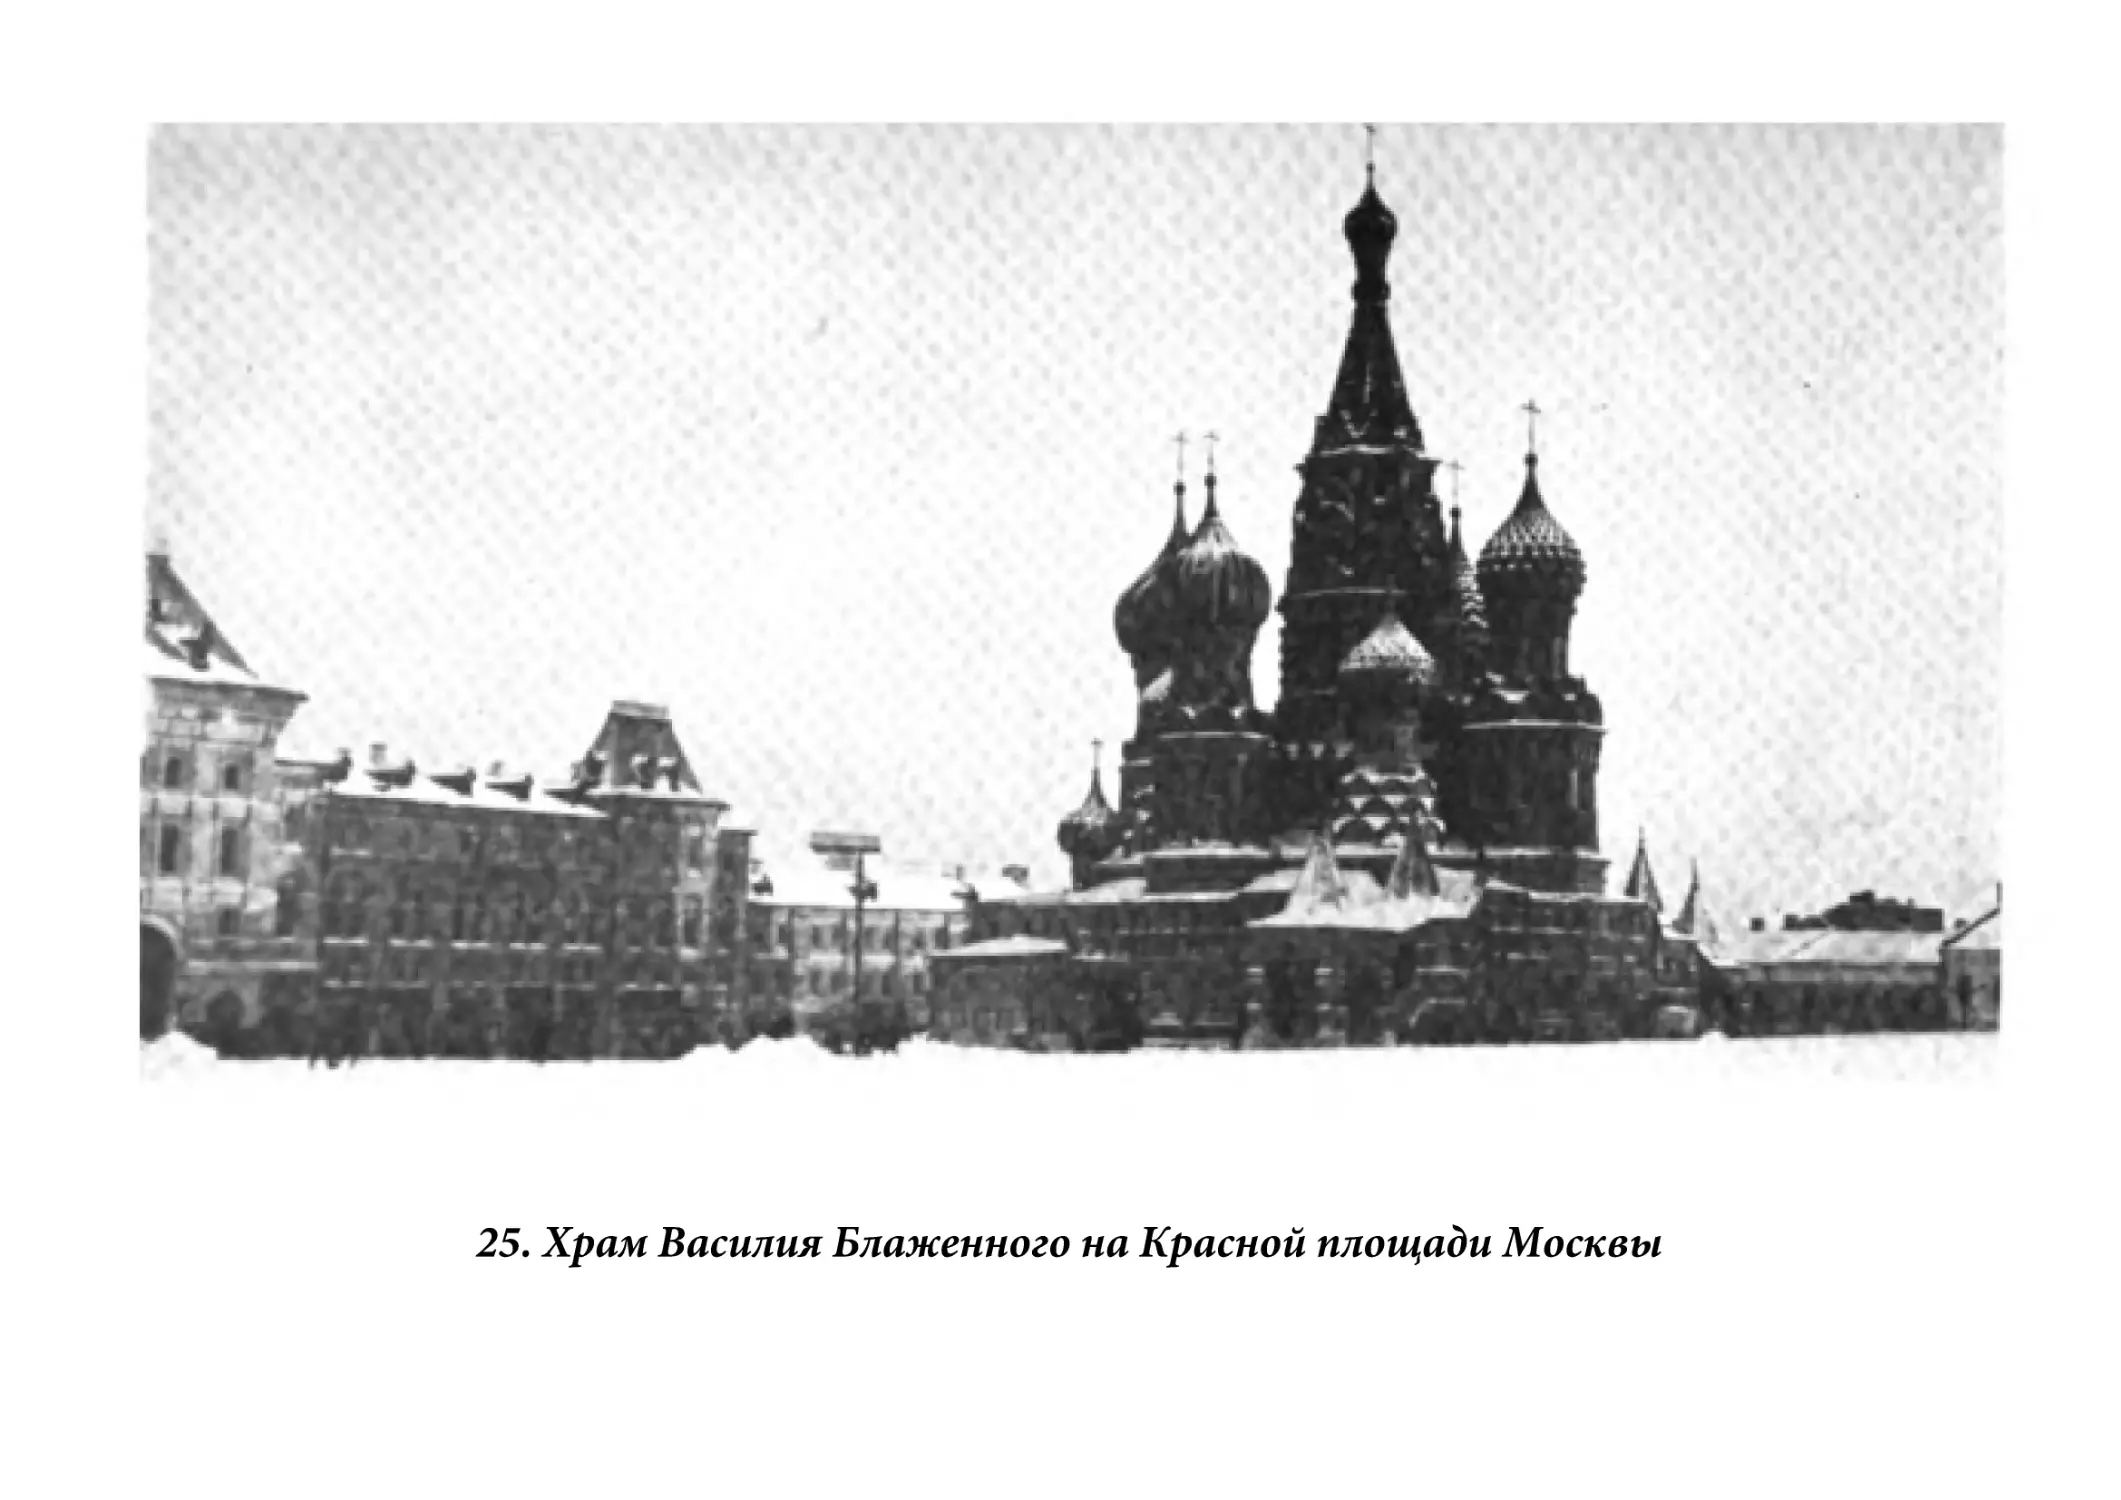 25. Храм Василия Блаженного на Красной площади Москвы